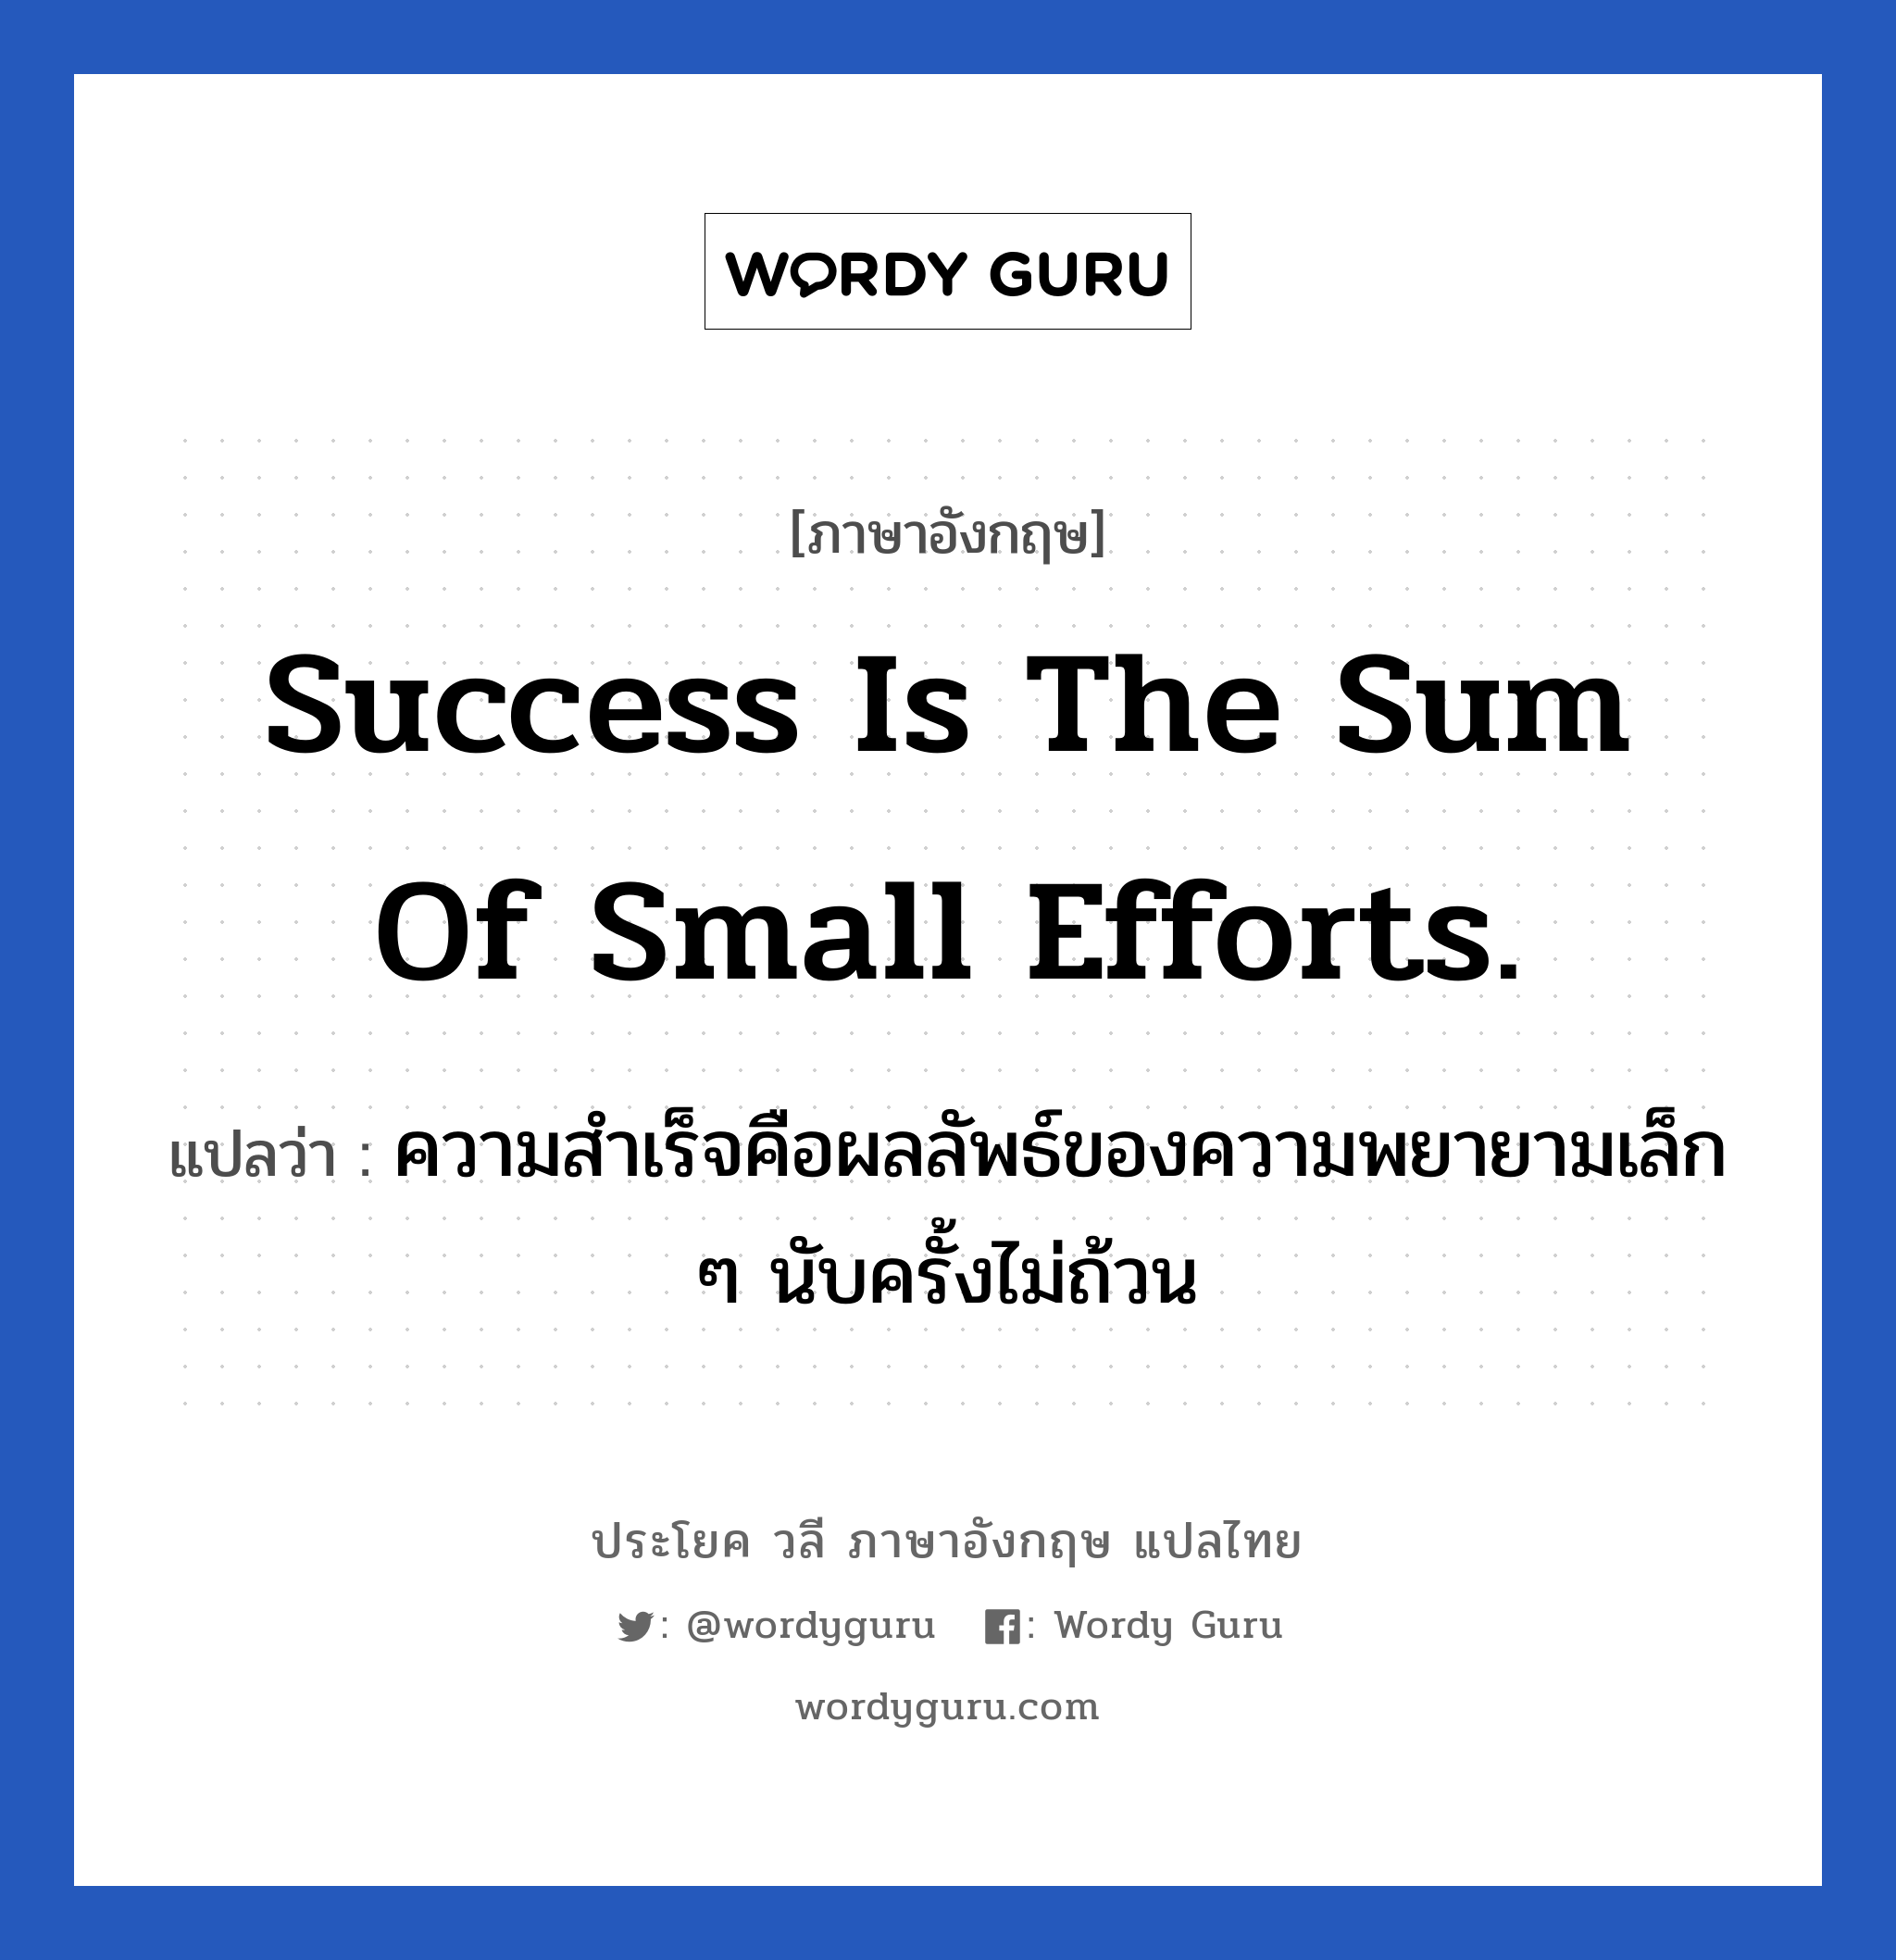 ความสำเร็จคือผลลัพธ์ของความพยายามเล็ก ๆ นับครั้งไม่ถ้วน ภาษาอังกฤษ?, วลีภาษาอังกฤษ ความสำเร็จคือผลลัพธ์ของความพยายามเล็ก ๆ นับครั้งไม่ถ้วน แปลว่า Success is the sum of small efforts. หมวด ในที่ทำงาน